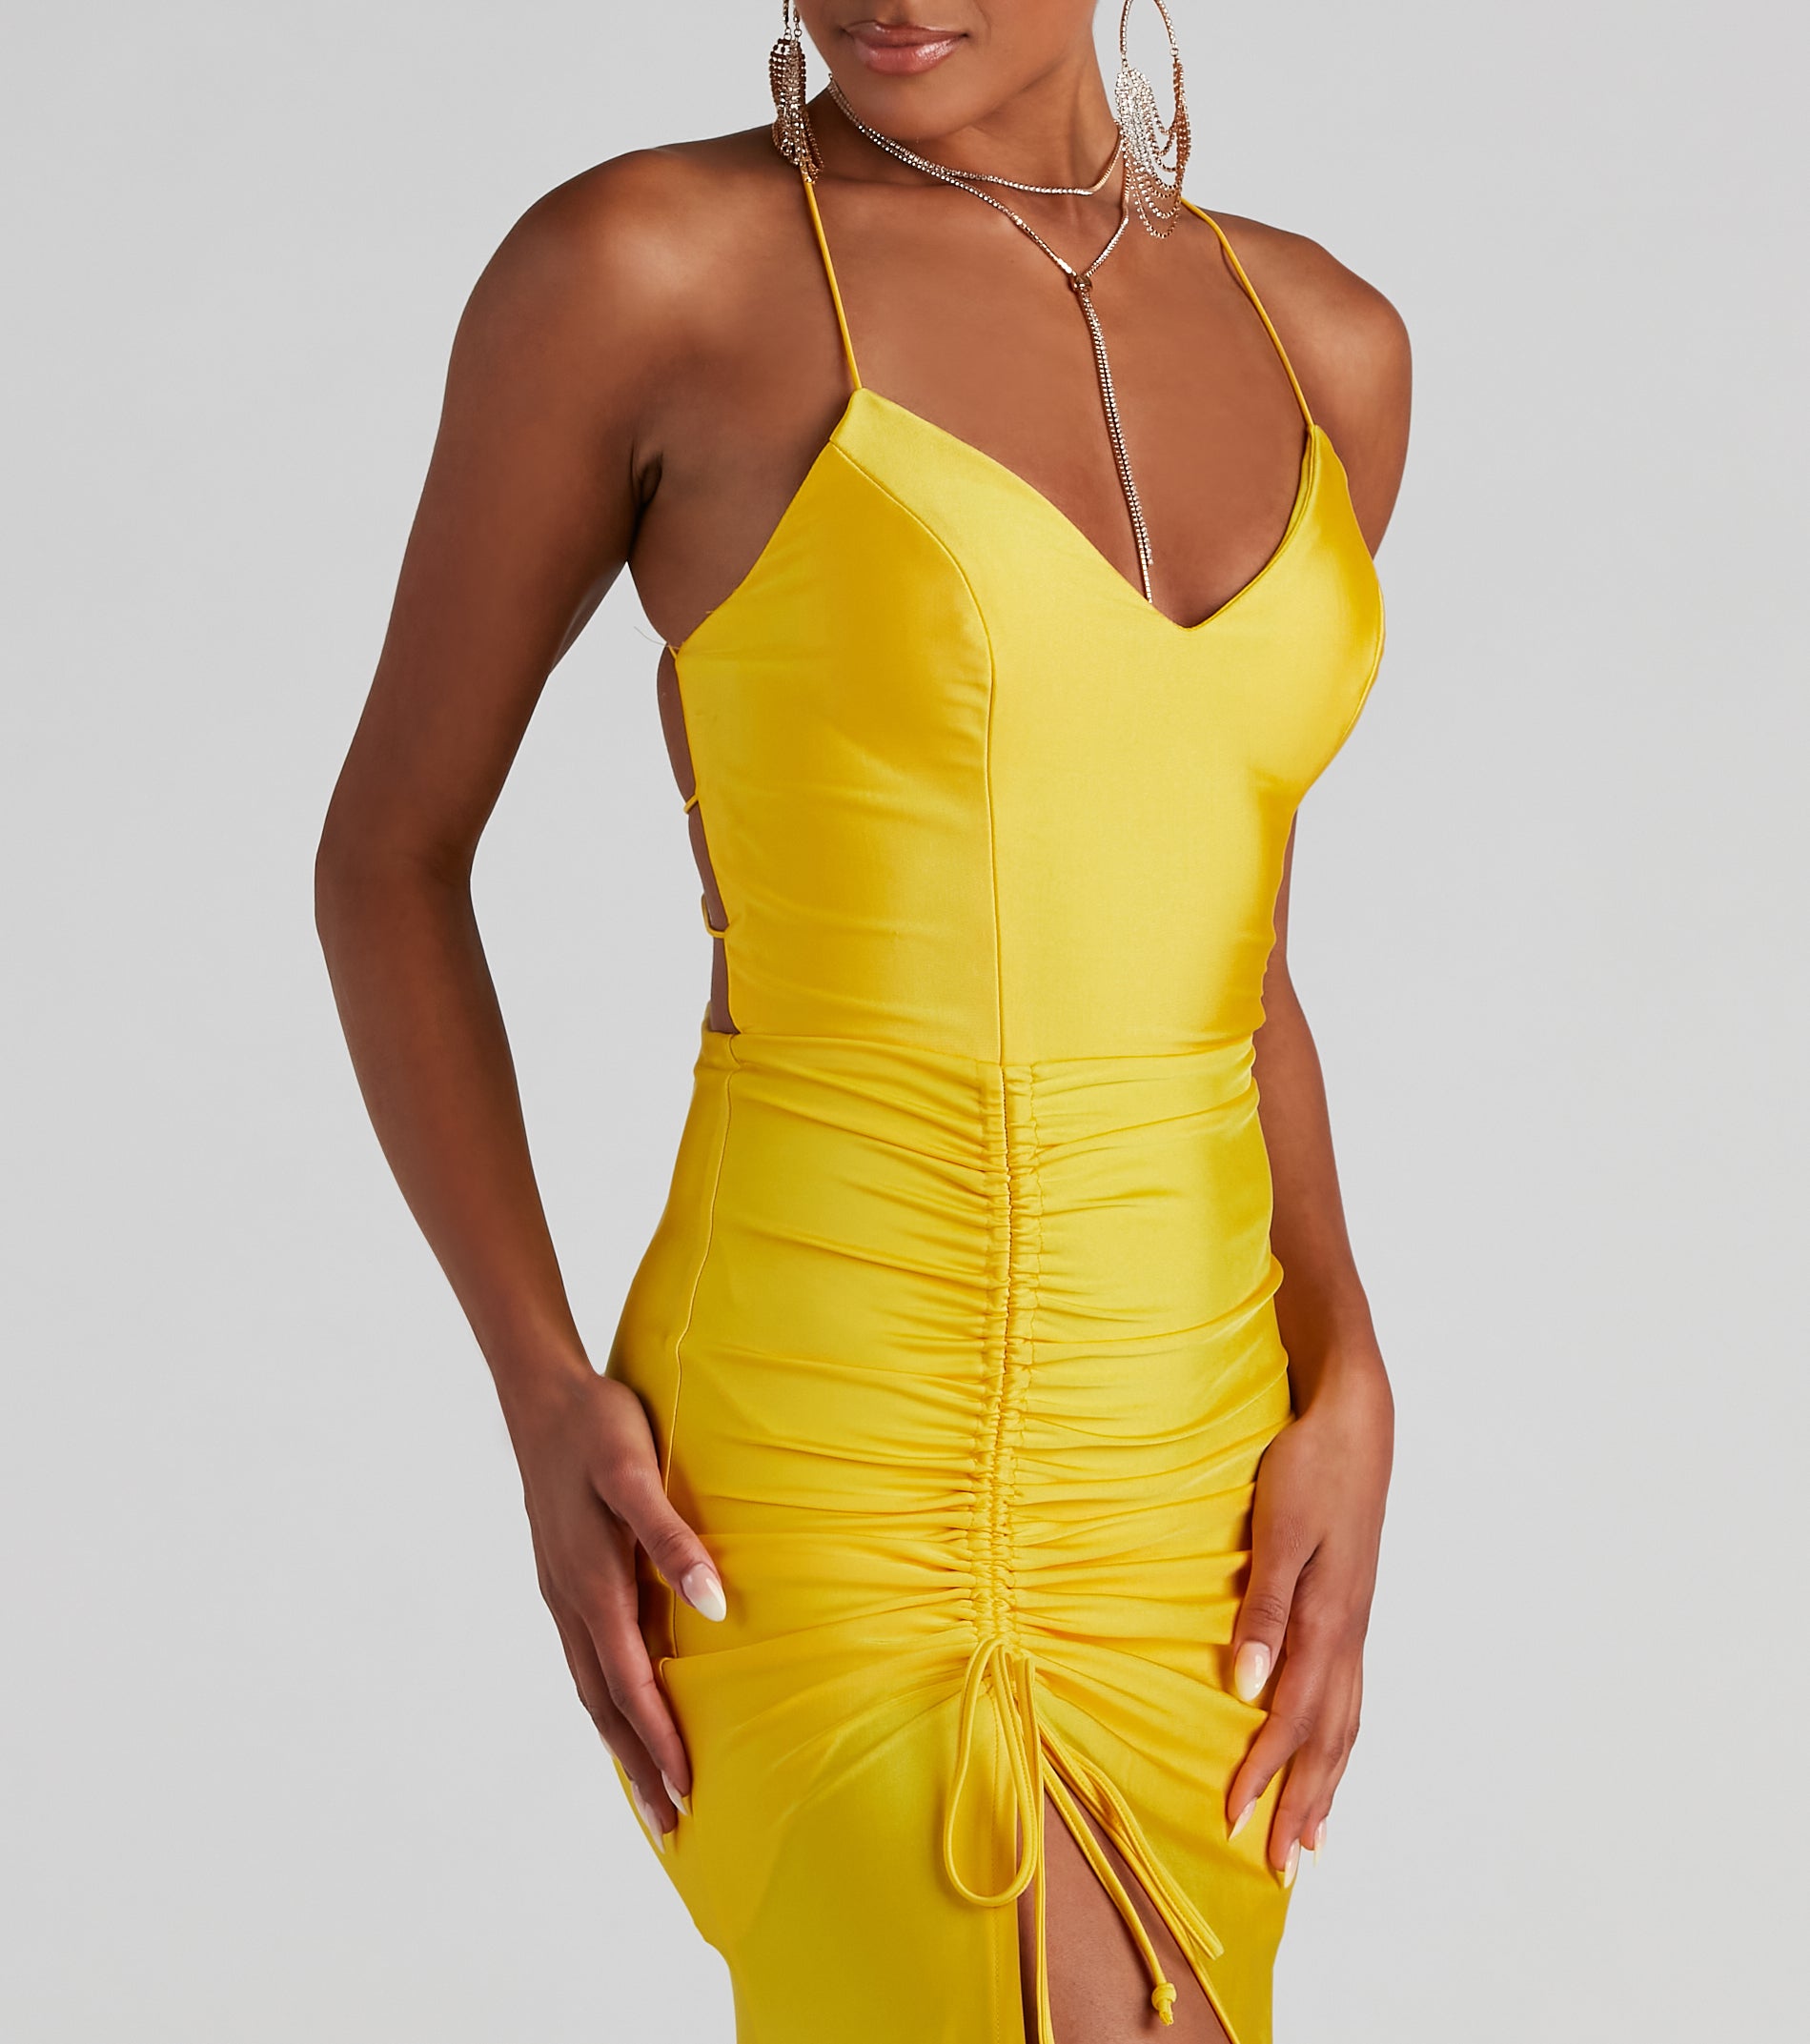 Whitney Formal High-Slit Mermaid Dress